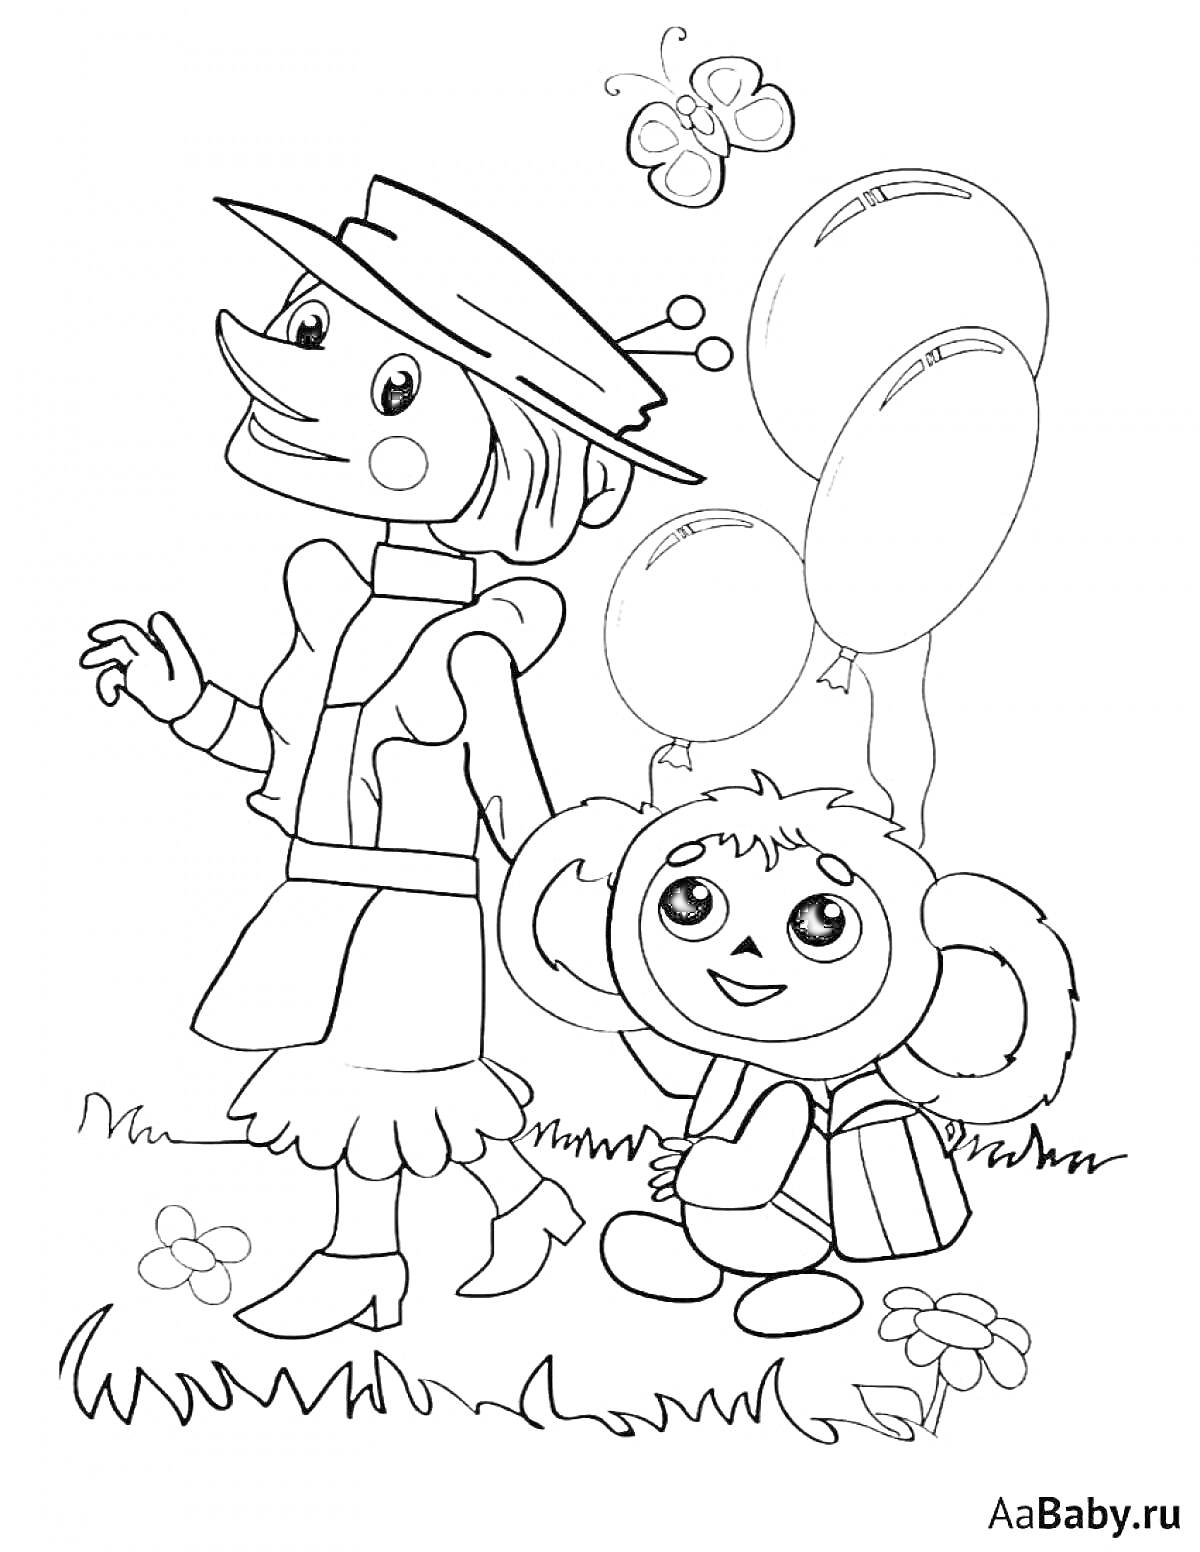 Раскраска Чебурашка и девочка с воздушными шарами, бабочками и цветами